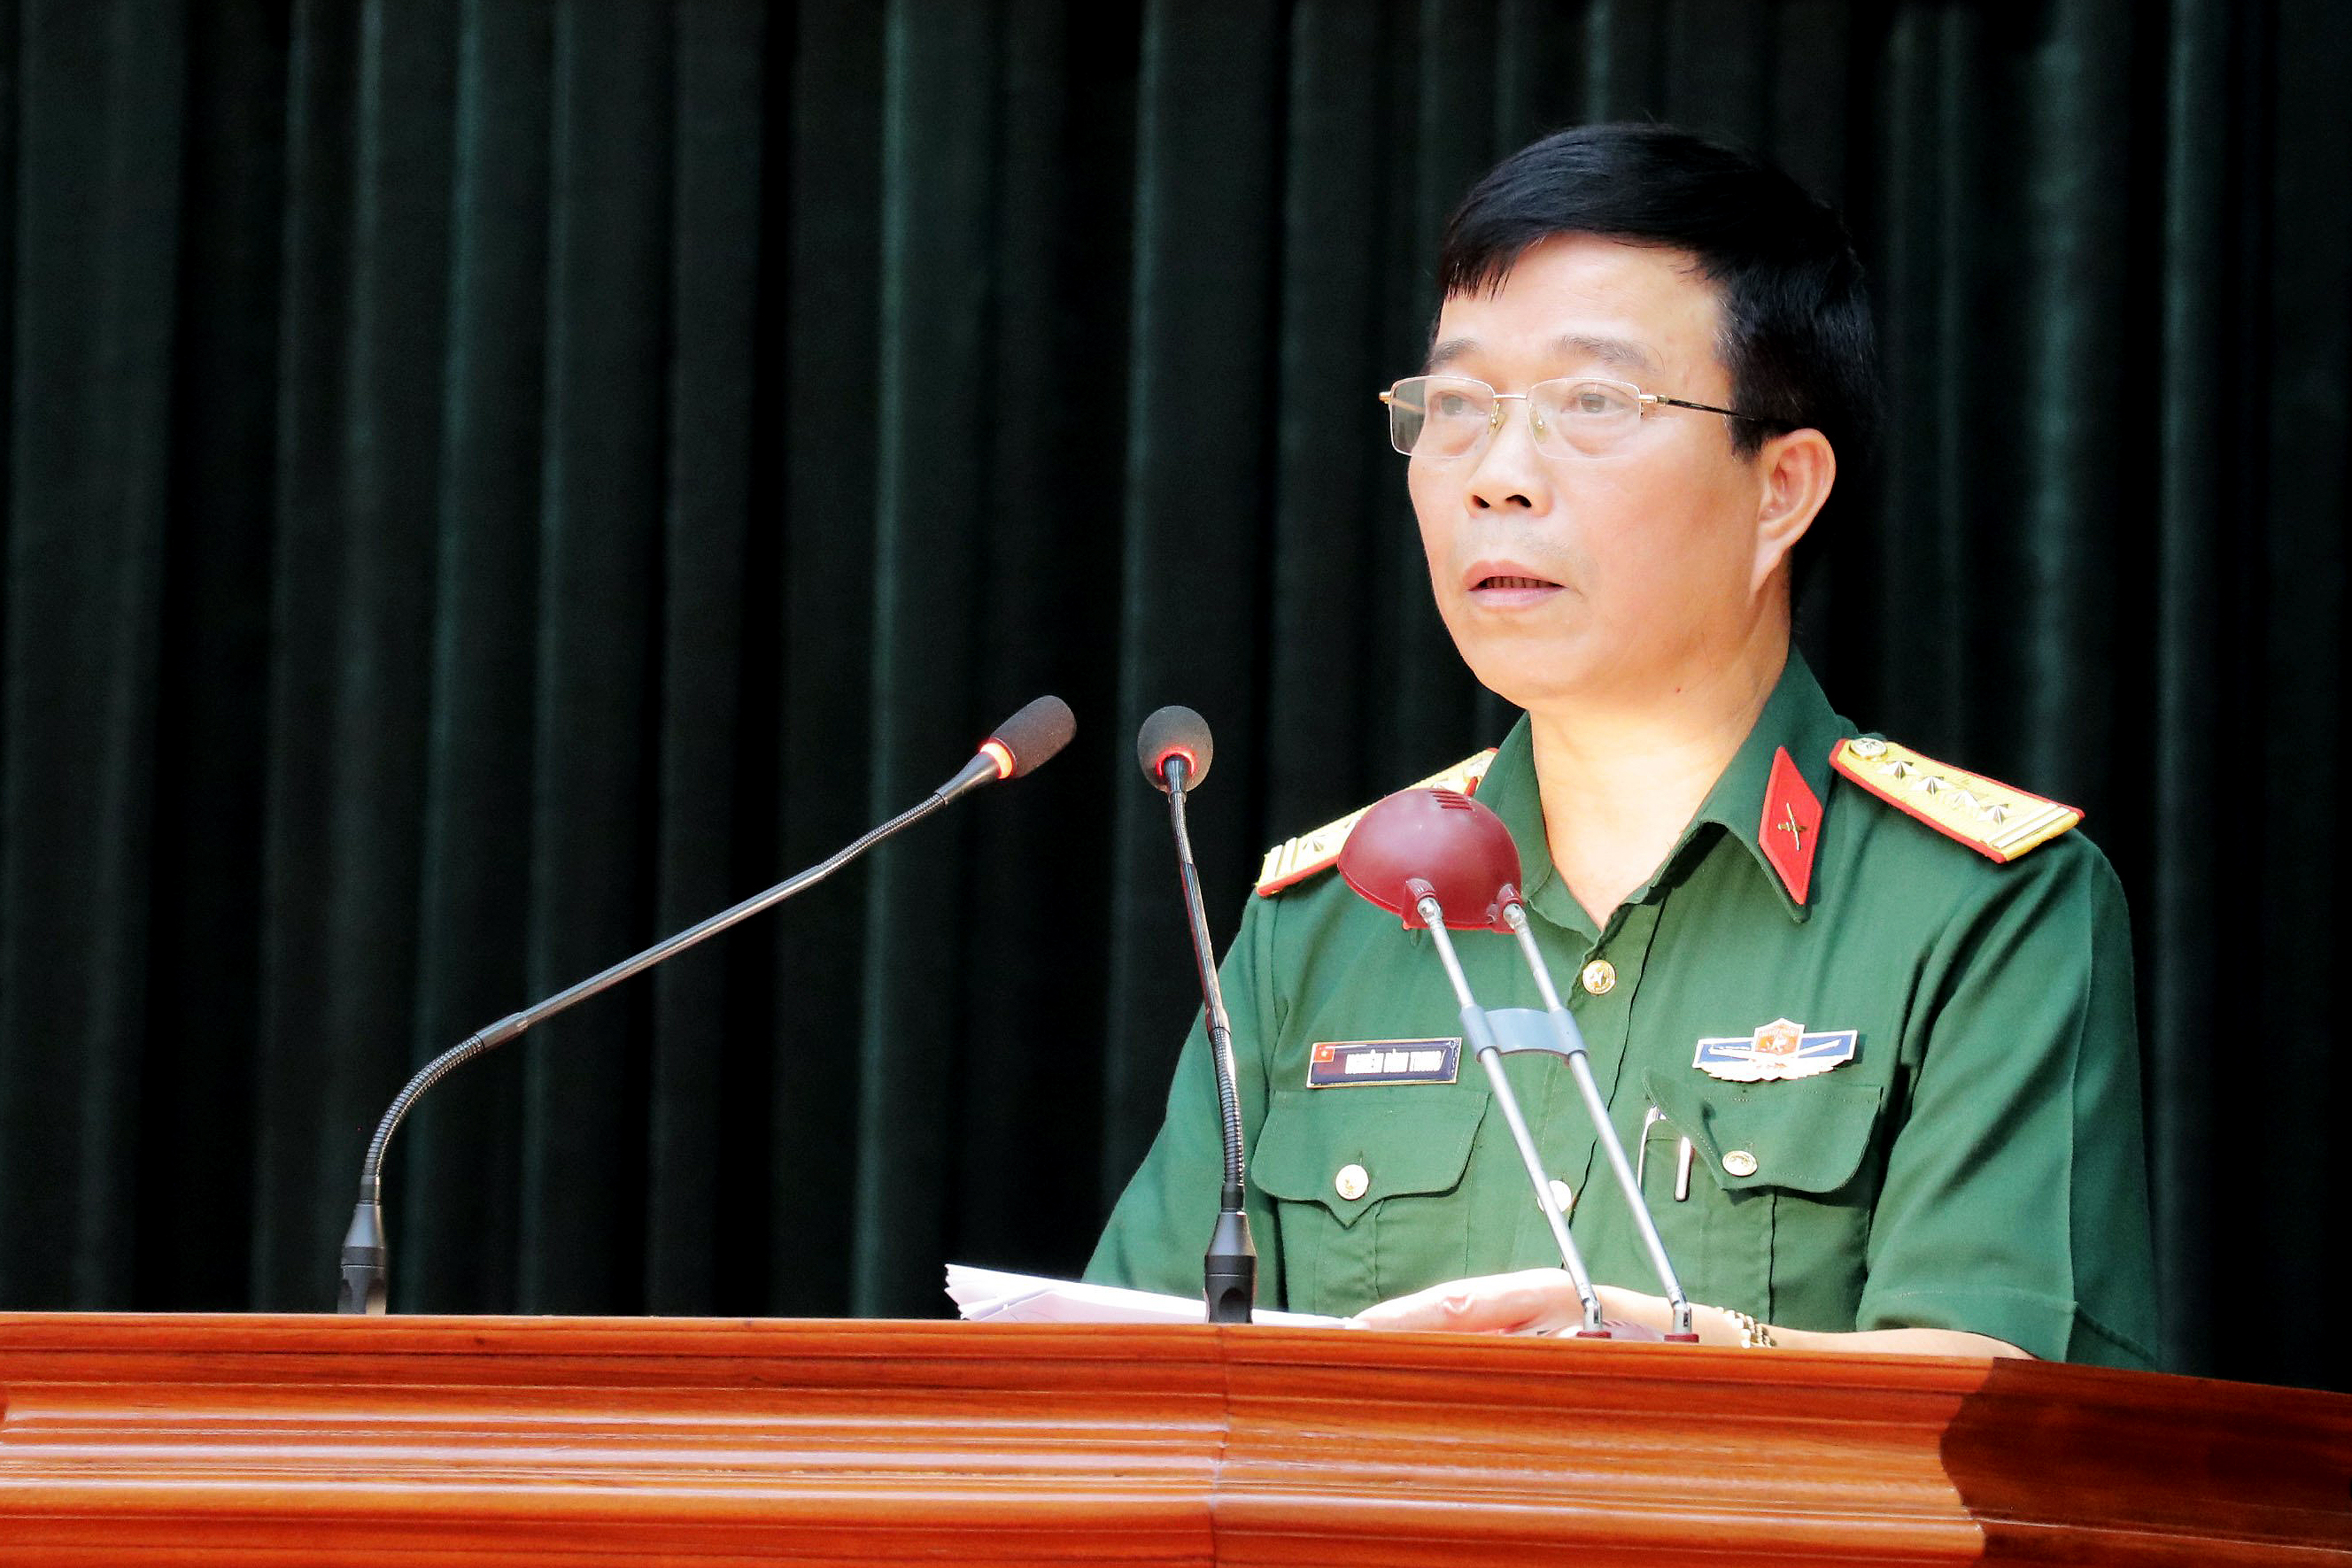 Đại tá Nghiêm Đình Trung, Ủy viên Ban Thường vụ Tỉnh ủy, Chỉ huy trưởng Bộ CHQS tỉnh Bắc Ninh